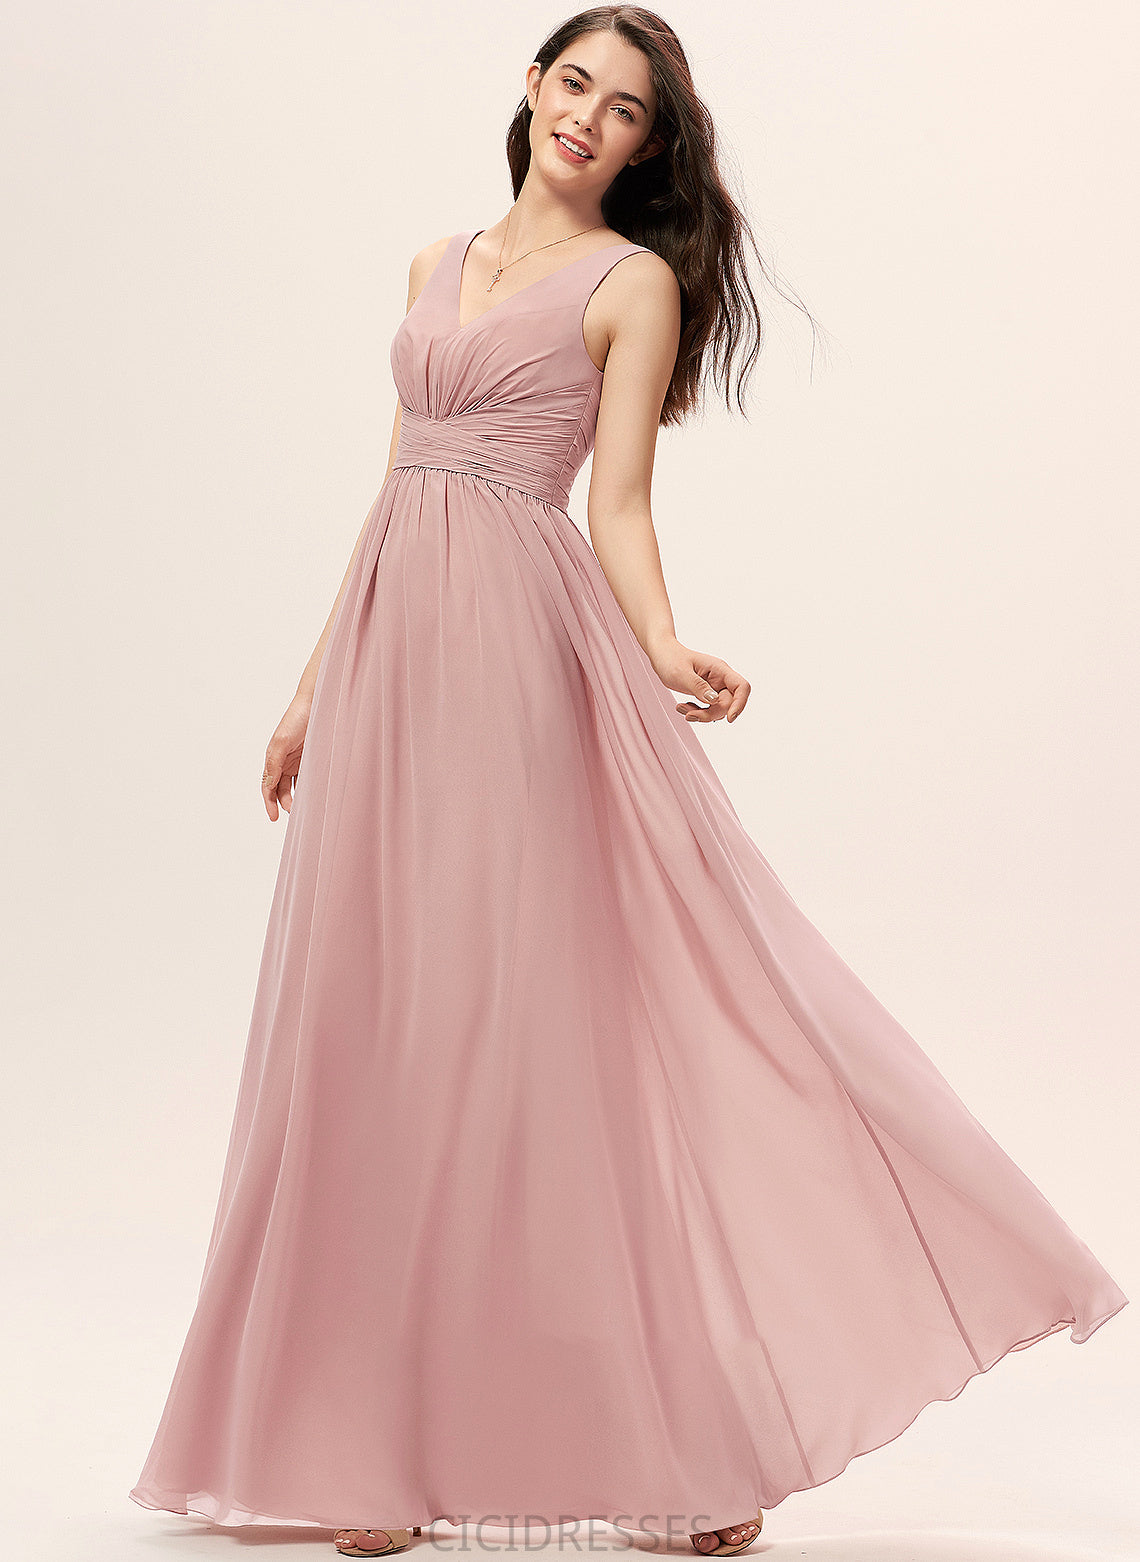 Embellishment Fabric Length Floor-Length Silhouette V-neck Neckline A-Line Ruffle Hanna Floor Length A-Line/Princess Bridesmaid Dresses